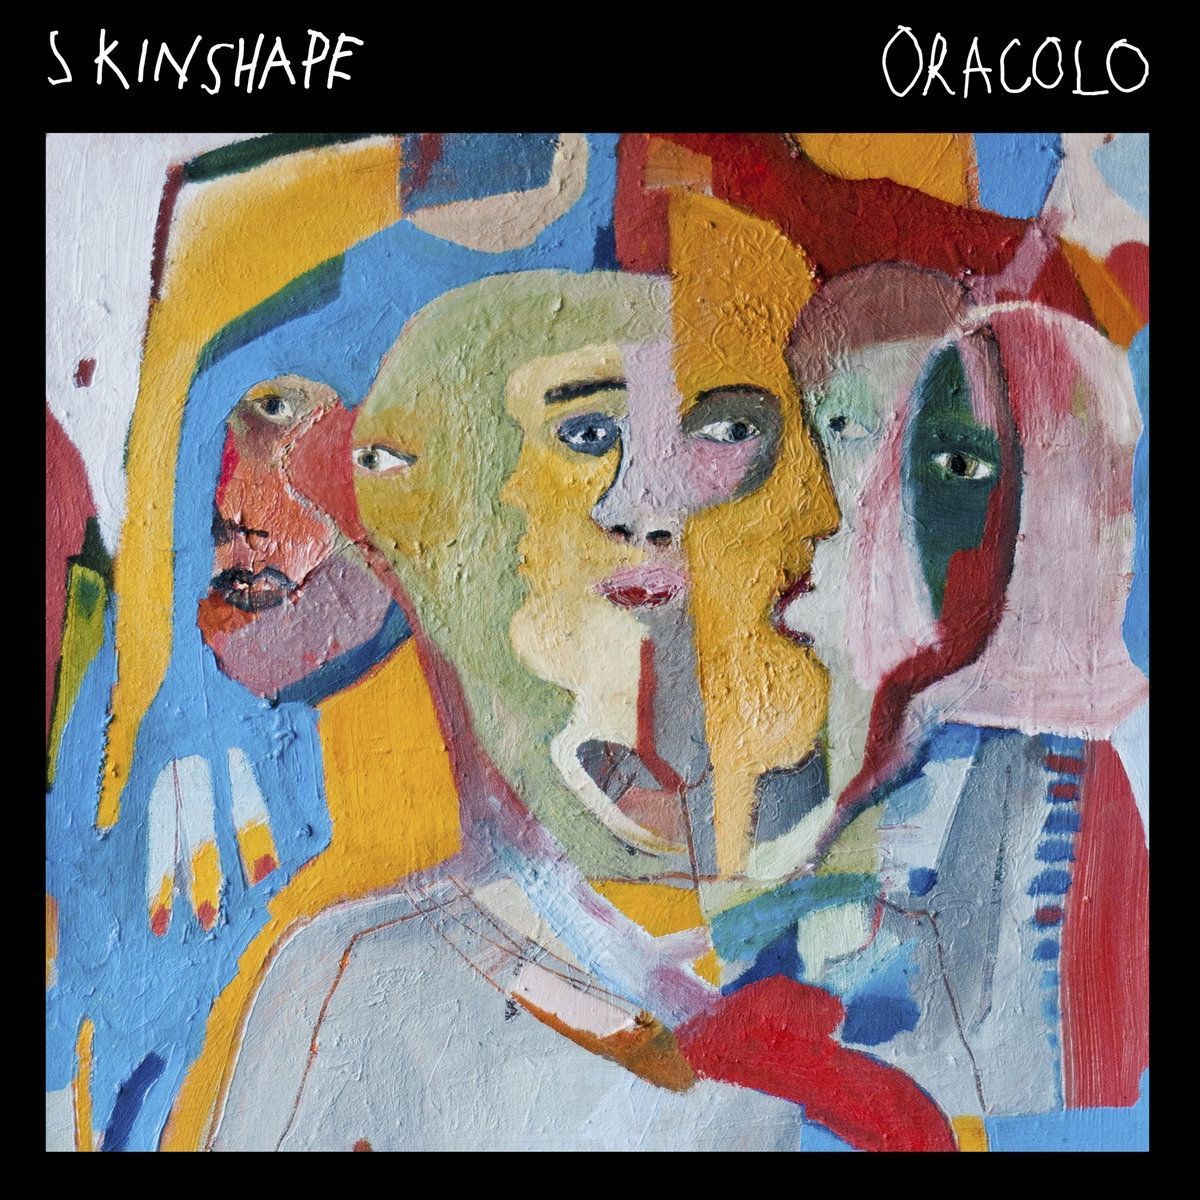 Imagem do álbum Oracolo do(a) artista Skinshape